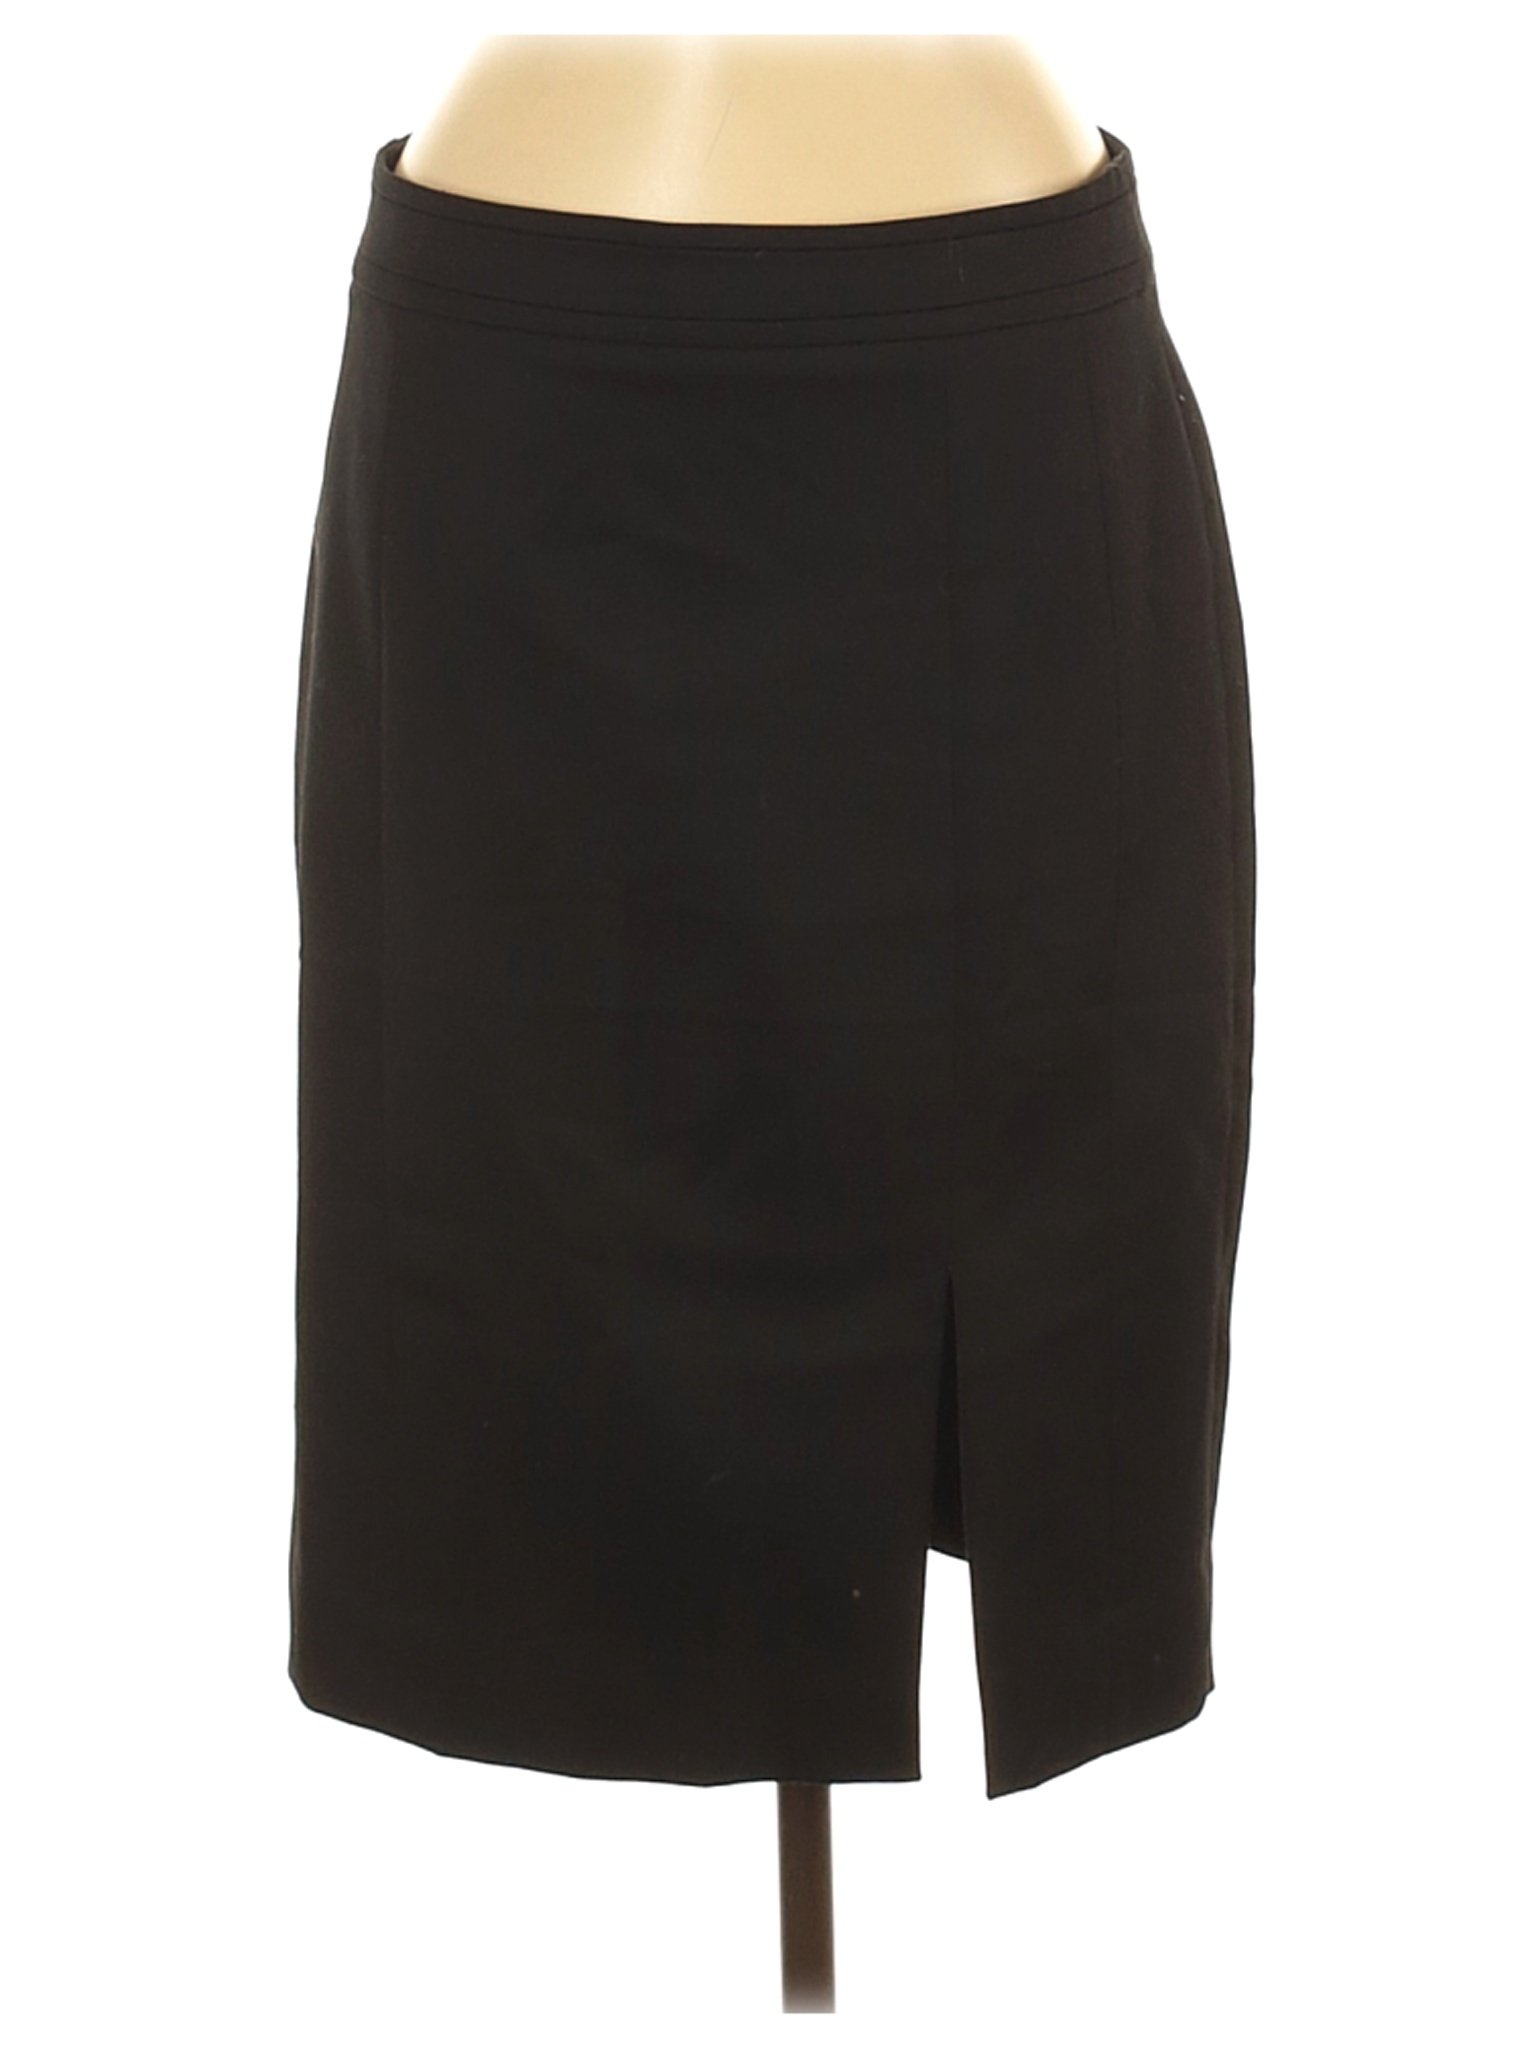 White House Black Market Women Black Casual Skirt 8 | eBay